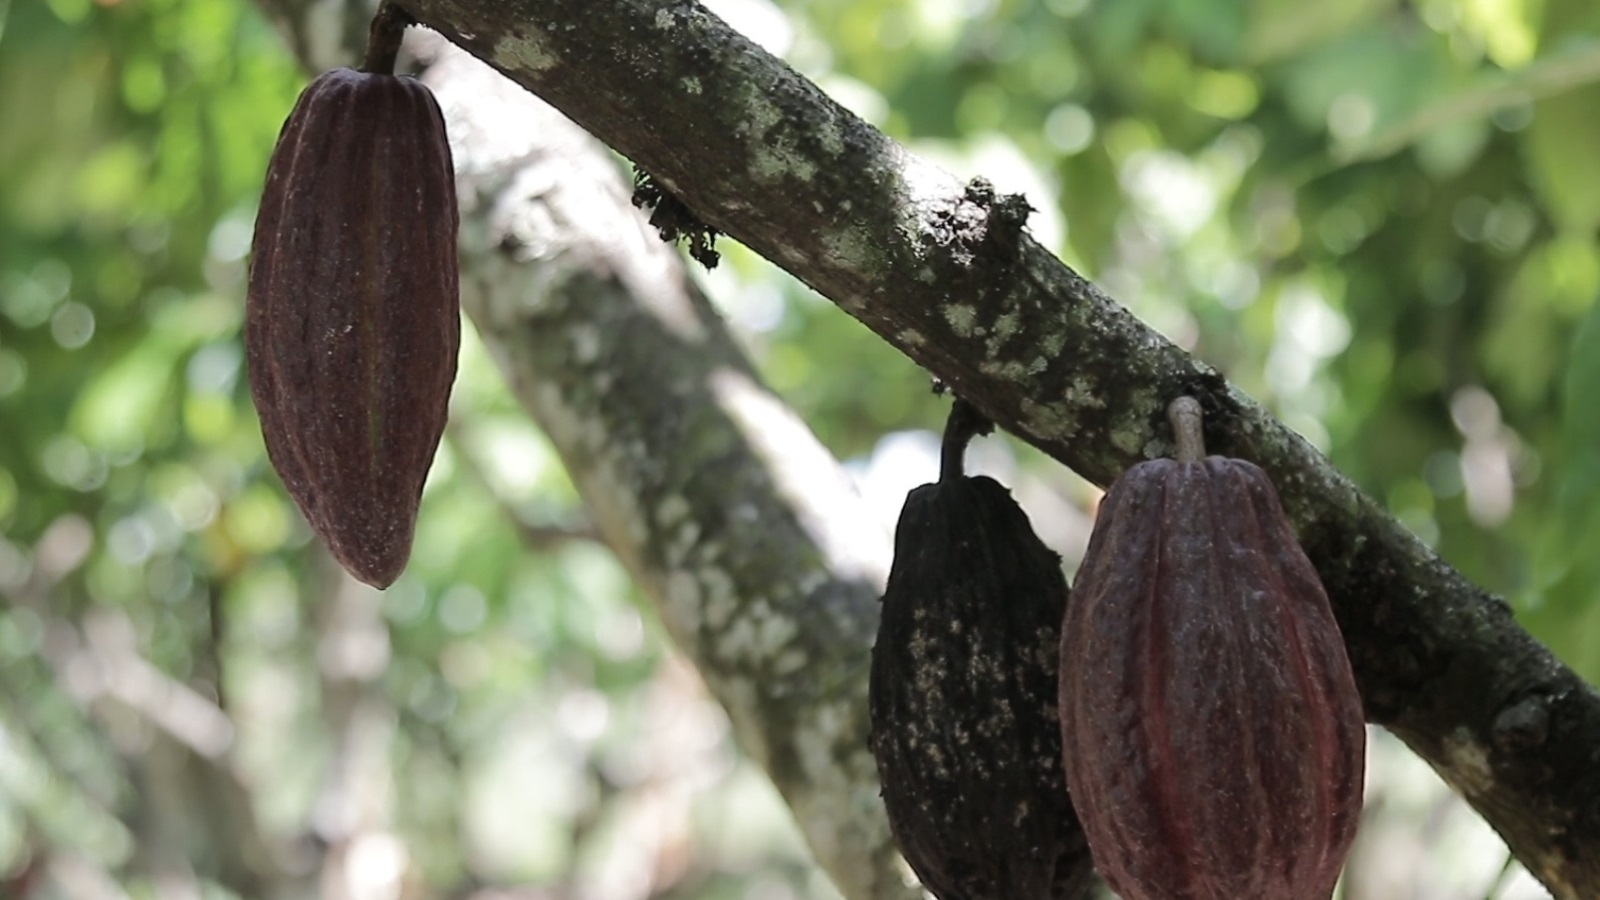 ثمار الكاكاو تعرضت للإصابة وهو ما عانت منه العديد من المزارع